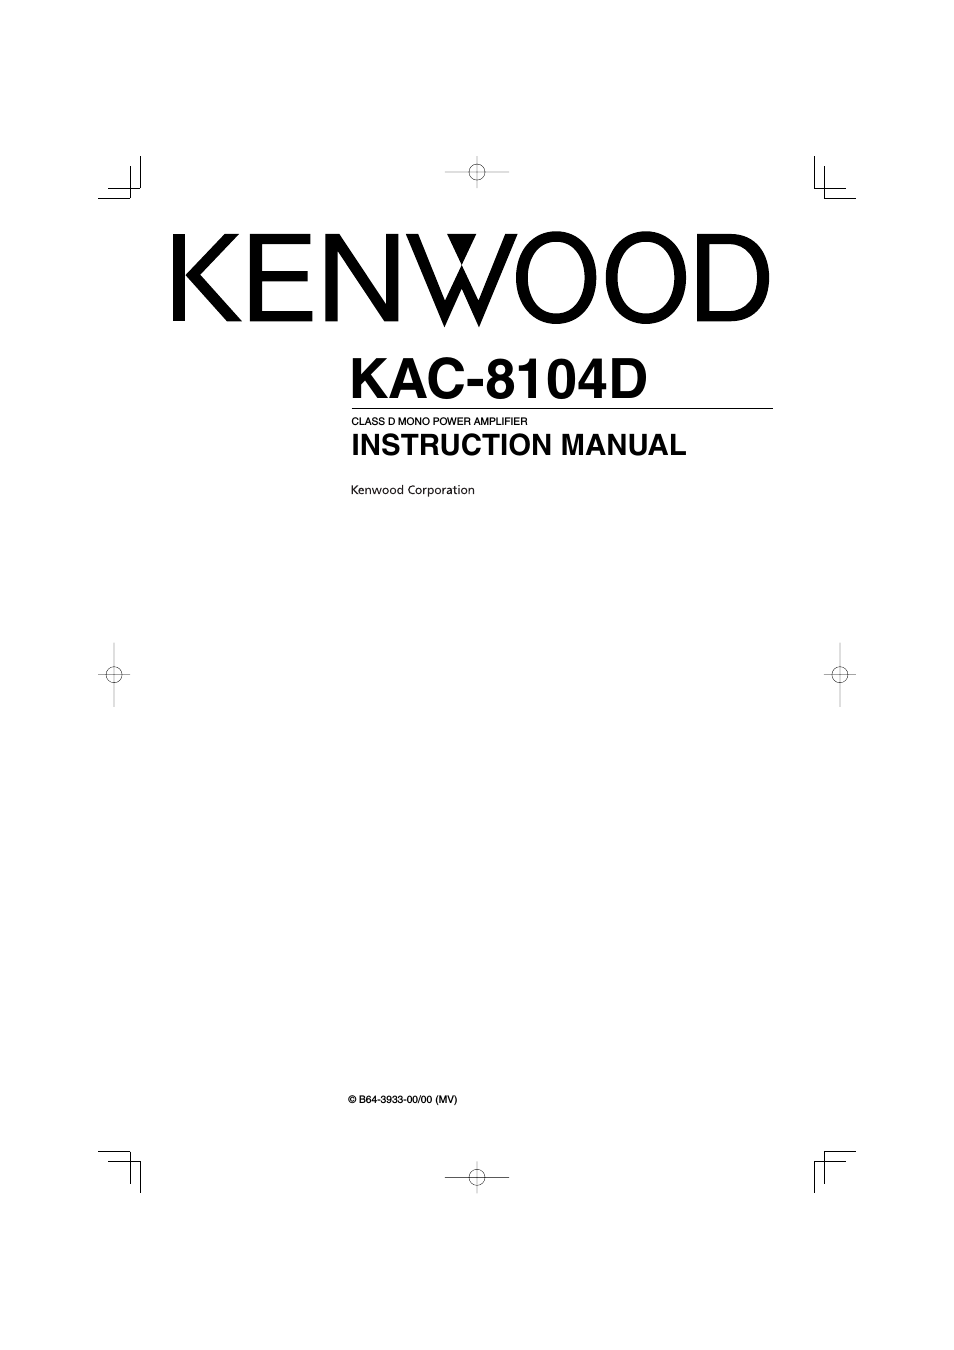 KAC-8104D